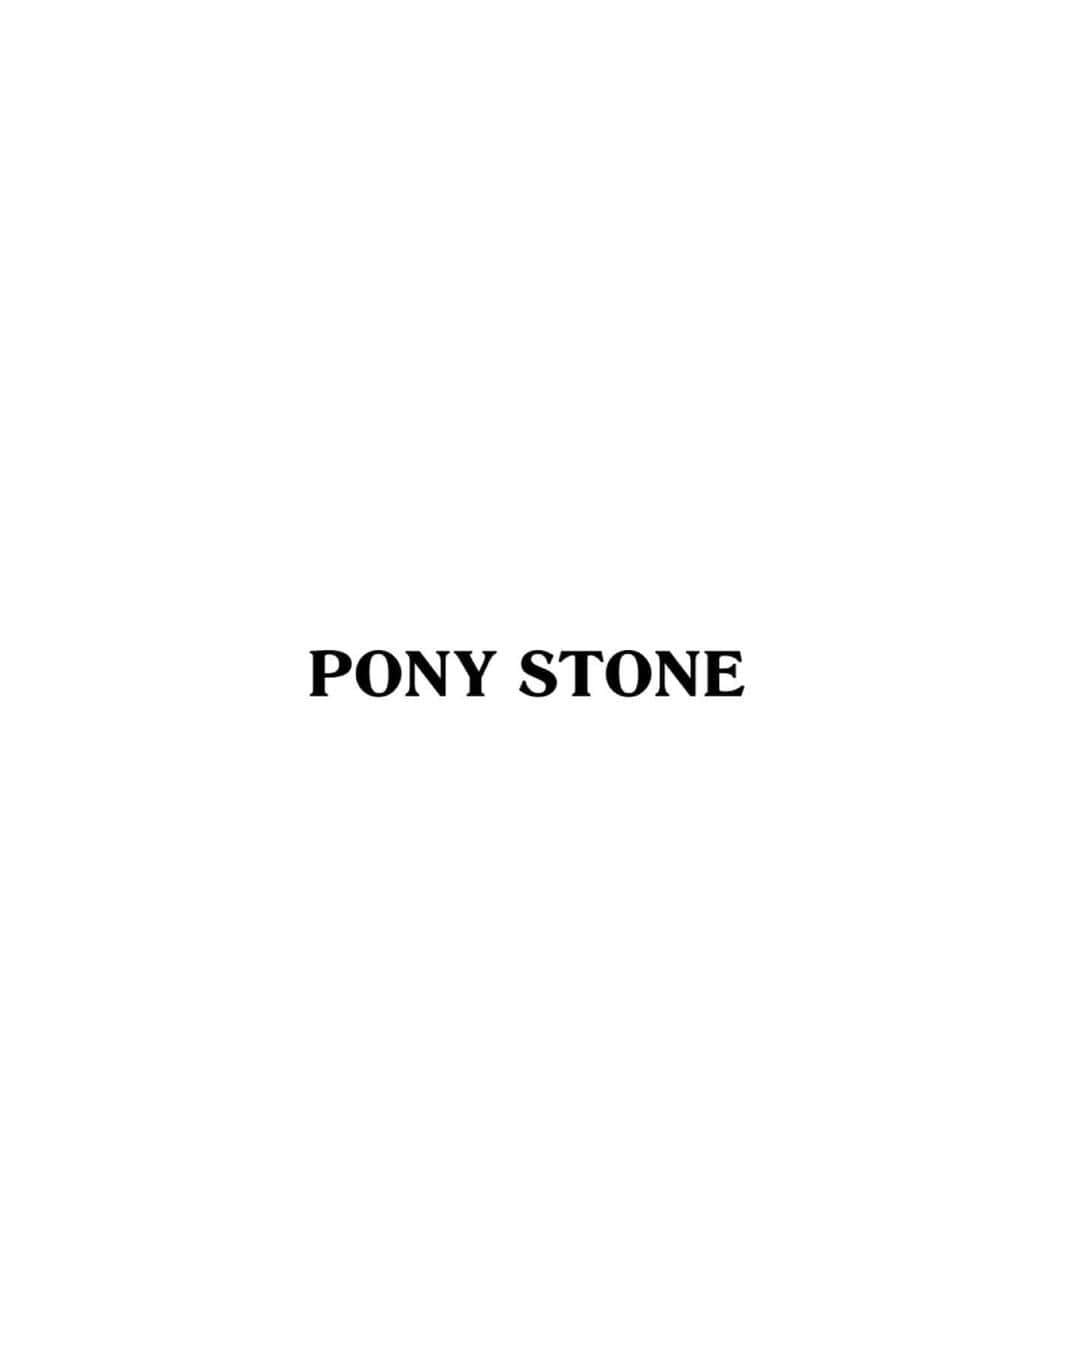 PONY STONEさんのインスタグラム写真 - (PONY STONEInstagram)「𝐏𝐎𝐍𝐘 𝐒𝐓𝐎𝐍𝐄 𝐒𝐀𝐅𝐄𝐓𝐘 𝐅𝐋𝐈𝐑𝐓 𝐊𝐈𝐓 🖤 1 𝐍𝐎𝐈𝐑 𝐟𝐚𝐜𝐞 𝐬𝐡𝐢𝐞𝐥𝐝 680 𝐭𝐡𝐛 หน้ากากอนามัย FACE SHIELD รูปหัวใจ(สีดำ) ขนาด Face shield length : 8” / width : 10” 2 𝐏𝐔𝐑𝐄 𝐟𝐚𝐜𝐞 𝗺𝐚𝐬𝐤 280 𝐭𝐡𝐛 หน้ากากอนามัยผ้านีโอพรีน สกรีนโลโก้ PONY STONE พร้อมสายคล้องคอ ขนาด Width : 26 cm. / High : 8.5 cm. 3 𝐁𝐔𝐋𝐋𝐄𝐓  𝐩𝐮𝐬𝐡 𝐬𝐭𝐢𝐜𝐤 680 𝐭𝐡𝐛 อุปกรณ์กดปุ่มอนามัย สำหรับพกพา แข็งแรงและทนทาน ช่วยลดความเสี่ยงต่อการสัมผัสเชื้อโรคได้และสามารถเป็นไฟแช็ก / ไฟฉาย  4 𝐏𝐑𝐈𝐎𝐑𝐈𝐓𝐘 𝐟𝐚𝐜𝐞 𝐜𝗼𝐯𝐞𝐫 𝐭𝐞𝐞 1680 𝐭𝐡𝐛 เสื้อยืดแขนสั้นคอMASKสามารถใส่ปิดขึ้นมาบริเวณใบหน้าได้ ผ้านุ่มใส่สบาย และมีช่องใส่ขวดสเปรย์แอลกอฮอล์ด้วย 5 𝐅𝐋𝐈𝐑𝐓 𝐭𝗼𝐭𝐞 𝐛𝐚𝐠 680𝐭𝐡𝐛 กระเป๋าผ้าสำหรับใส่อุปกรณ์ที่ป้องกันเชื้อโรค เชื้อไวรัส ที่สะพายออกจากบ้านได้อย่างมั่นใจ และมีช่องแบ่งใส่ของ 3 ช่องด้วย 6 𝐊𝐈𝐓𝐙 𝐠𝐥𝗼𝐯𝐞 𝐛𝗼𝐱/ 3 𝐛𝐥𝐚𝐜𝐤 𝐫𝐮𝐛𝐛𝐞𝐫  𝐠𝐥𝗼𝐯𝐞𝐬 480 𝐭𝐡𝐛 กล่องใส่ถุงมือยางอนามัย กล่องที่ใส่ถุงมือยางที่พกออกจากบ้านได้โดยหยิบมาใช้ในการสัมผัสสิ่งของโดยตรง ลดการสัมผัสเชื้อโรค 1 กล่องมีถุงมือให้ 3 ชิ้น 7 𝐒𝐏𝐑𝐄𝐀𝐃𝐈𝐍𝐆 𝐋𝐎𝐕𝐄 3 𝐛𝗼𝐭𝐭𝐥𝐞𝐬 𝐚𝐥𝐜𝗼𝐡𝗼𝐥 𝐬𝐩𝐫𝐚𝐲 75% 320 𝐭𝐡𝐛 Spreading love 🤍 ALCOHOL HAND SPRAY 🤍 มีส่วนผสมแอลกอฮอล์ 75% Food grade ใช้ทำความสะอาดมือ และ สิ่งของต่างๆรอบตัว เพื่อ ฆ่าเชื้อโรค-ไวรัสได้ถึง99.99%  𝐈𝐍𝐃𝐈𝐕𝐈𝐃𝐔𝐀𝐋 4,880𝐭𝐡𝐛  มูลค้าสินค้ารวม 4,880 thb 𝐒𝐞𝐭 3,880𝐭𝐡𝐛  ราคาขายยกเซ็ต 3,880 thb สามารถซื้อแยกชิ้นได้  𝐀𝐕𝐀𝐈𝐋𝐀𝐁𝐋𝐄  𝐎𝐑 𝐎𝐑𝐃𝐄𝐄 𝐕𝐈𝐀 𝐋𝐈𝐍𝐄」6月7日 19時22分 - ponystone_official